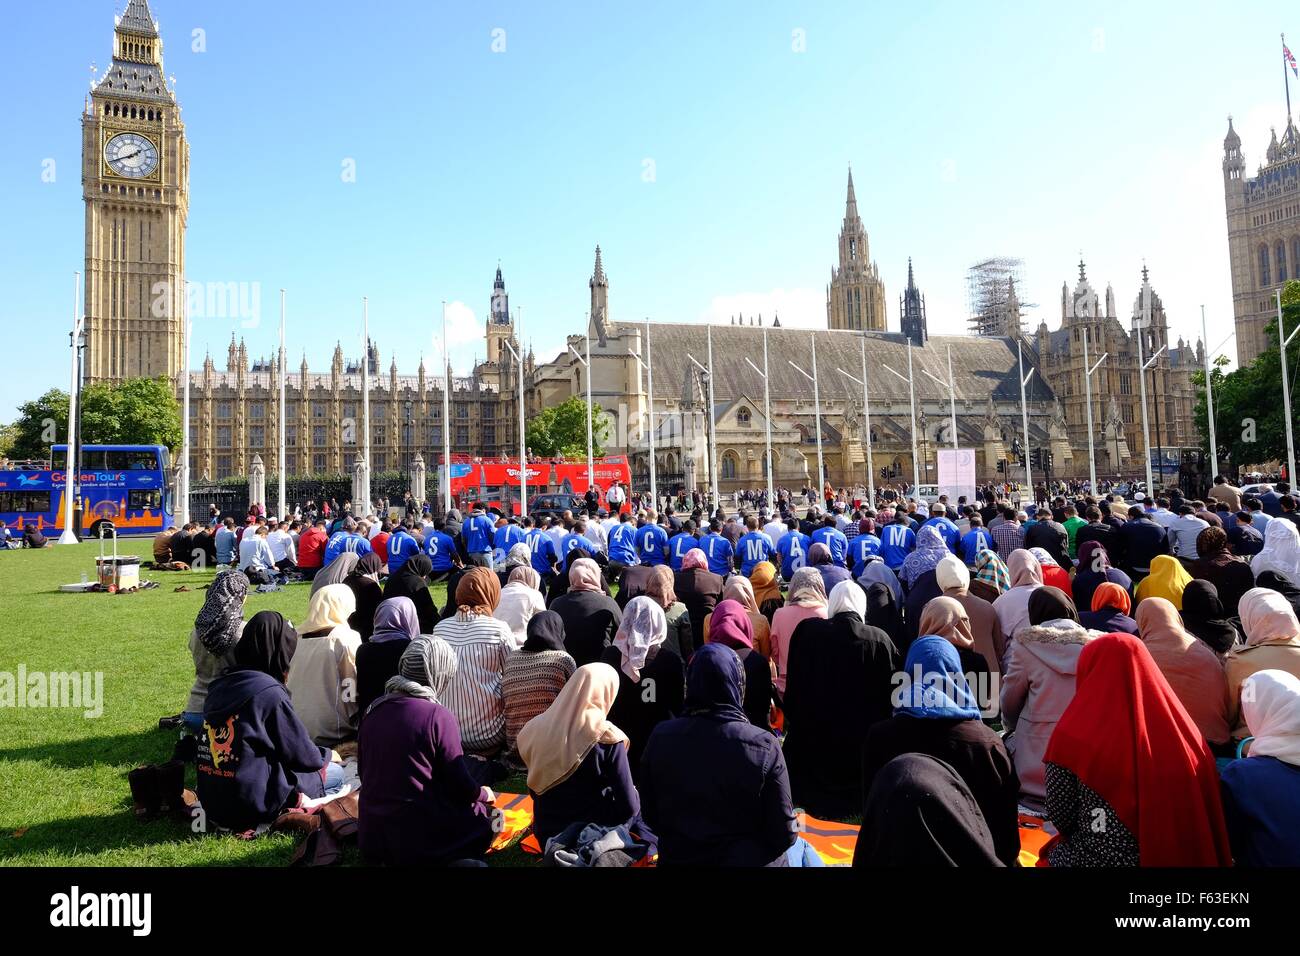 Un groupe de musulmans tenir jummah, la prière du vendredi à la place du Parlement pour la première fois, organisé par un groupe appelé les musulmans d' Action : Atmosphère Où : London, Royaume-Uni Quand : 09 Oct 2015 Banque D'Images